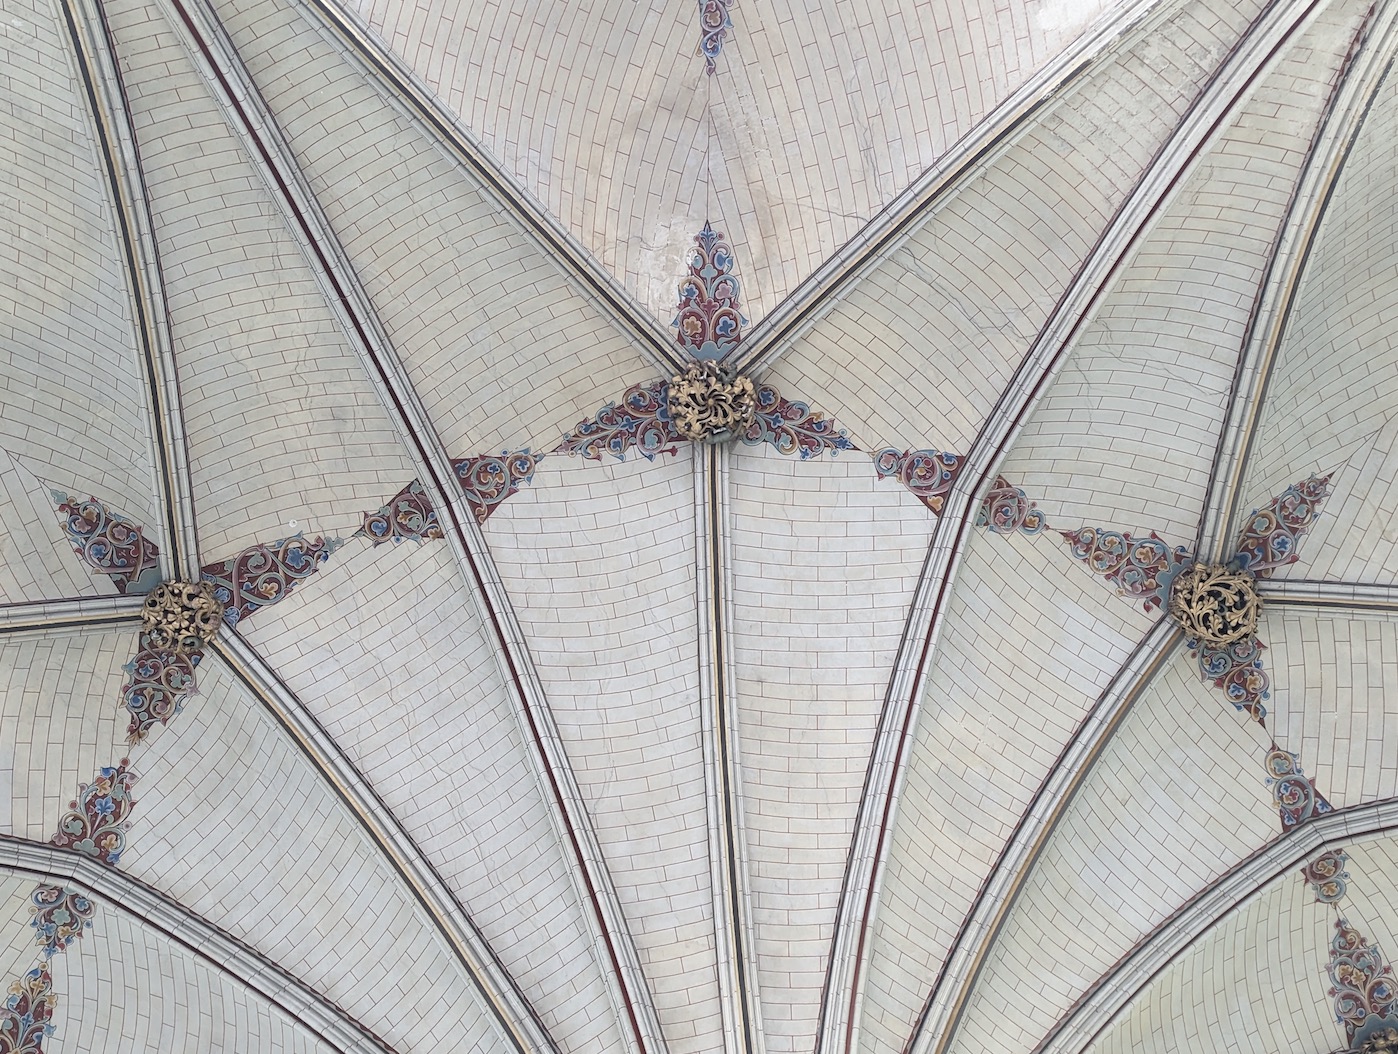 Salisbury Cathedral Ceilings - Always Look Up